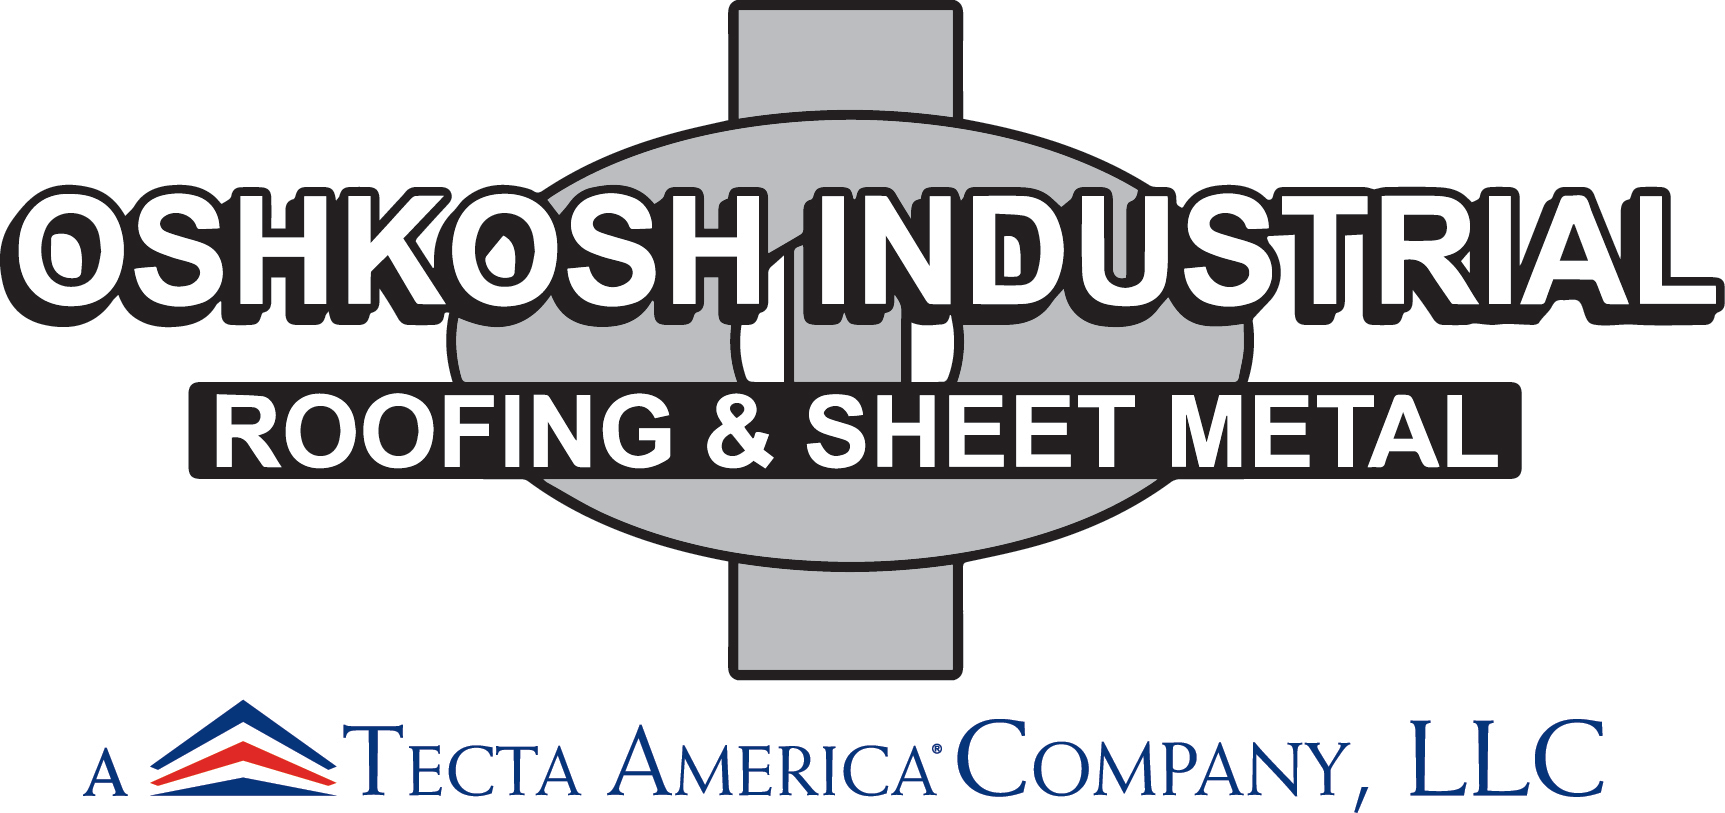 Oshkosh Industrial Roofing & Sheet Metal, LLClogo